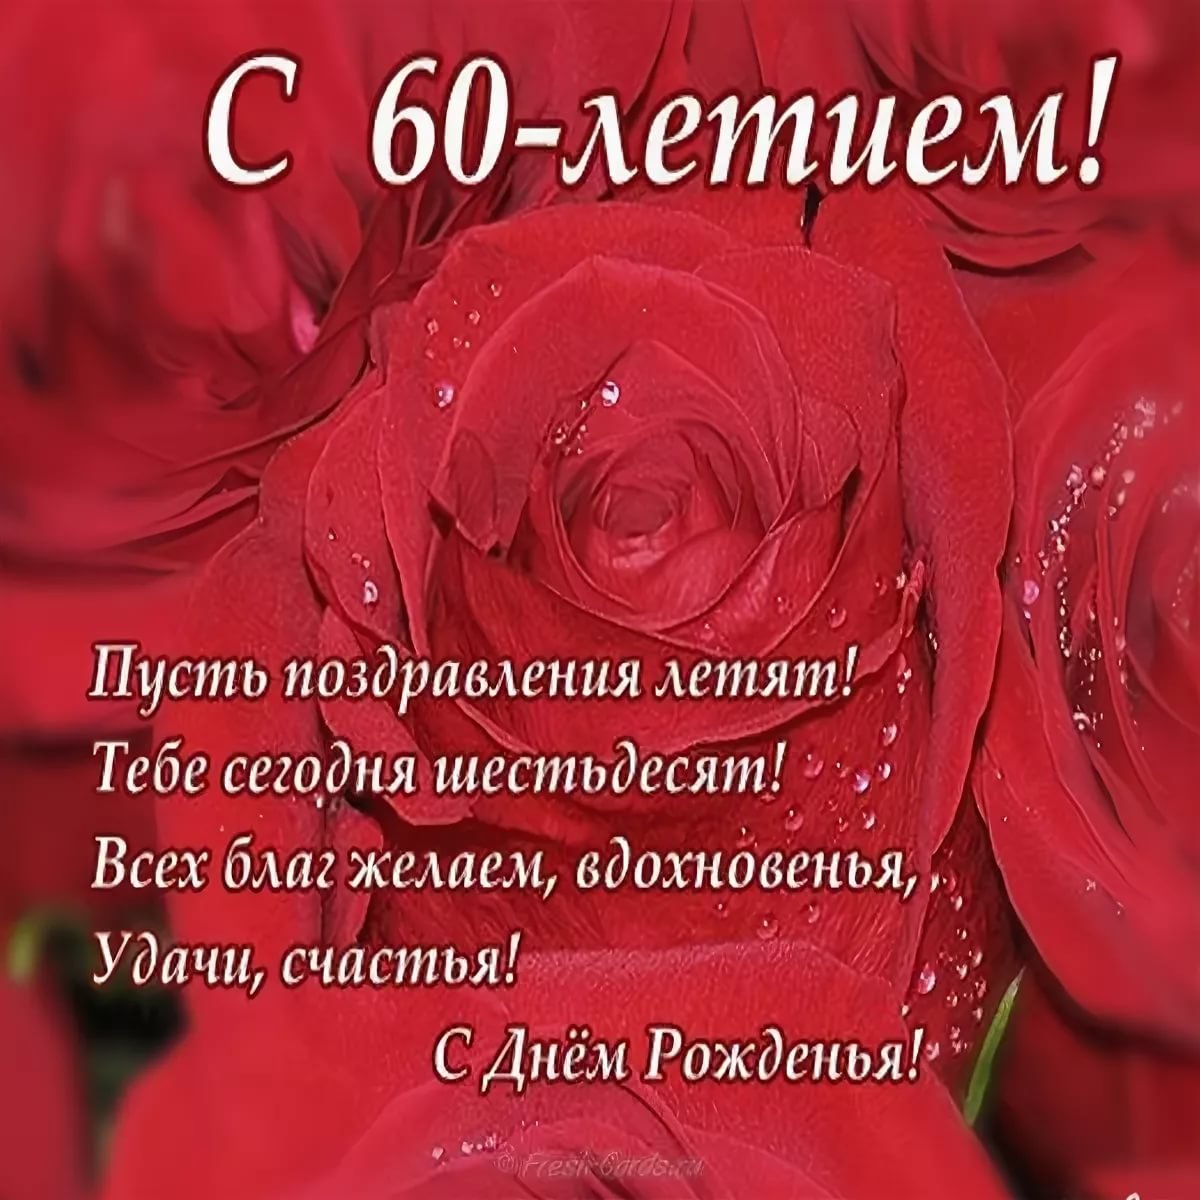 Поздравление на татарском языке маме - 73 фото